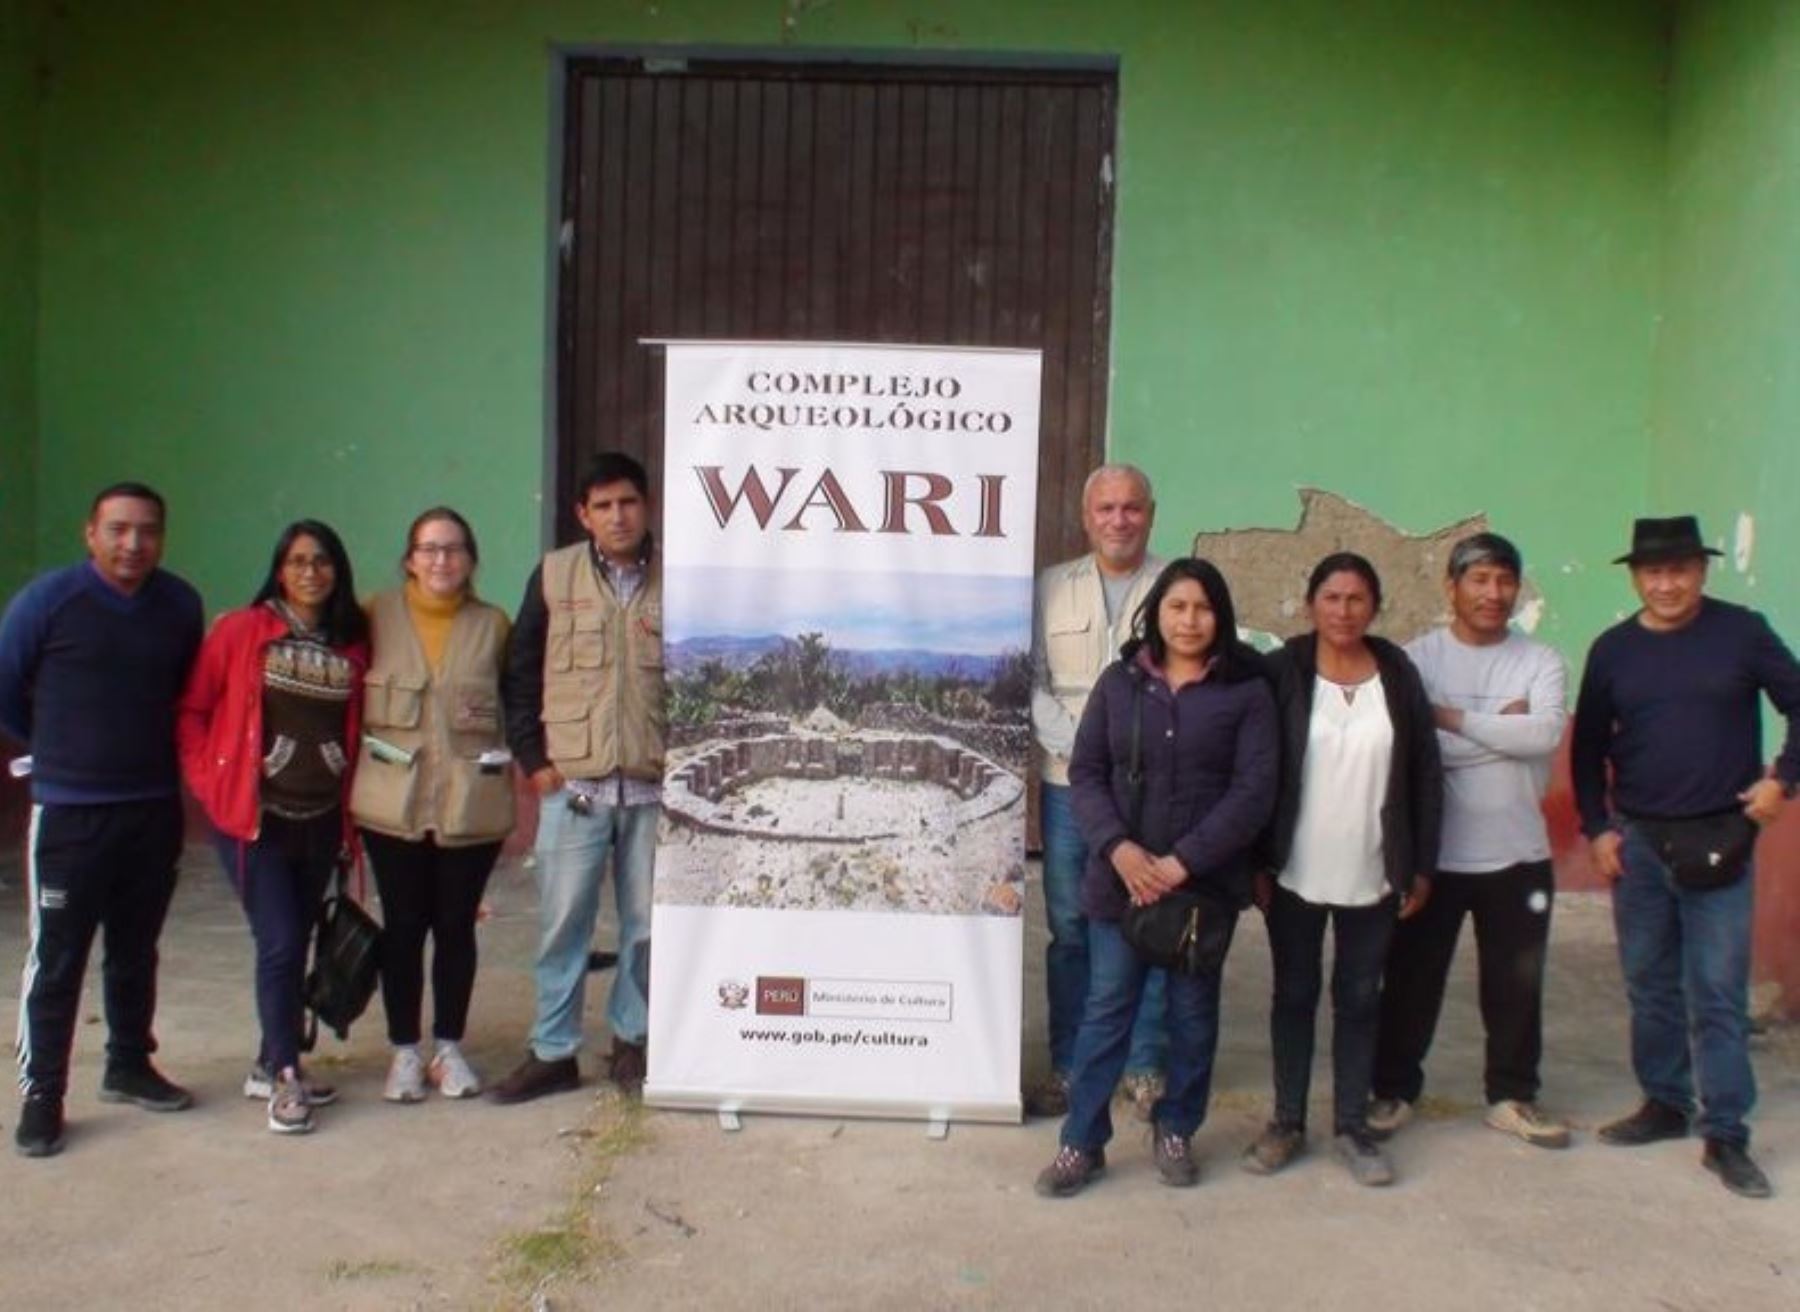 Culmina el proceso de consulta previa para delimitar el monumento arqueológico prehispánico Wari sector B en Ayacucho, destacó el Ministerio de Cultura. ANDINA/Difusión